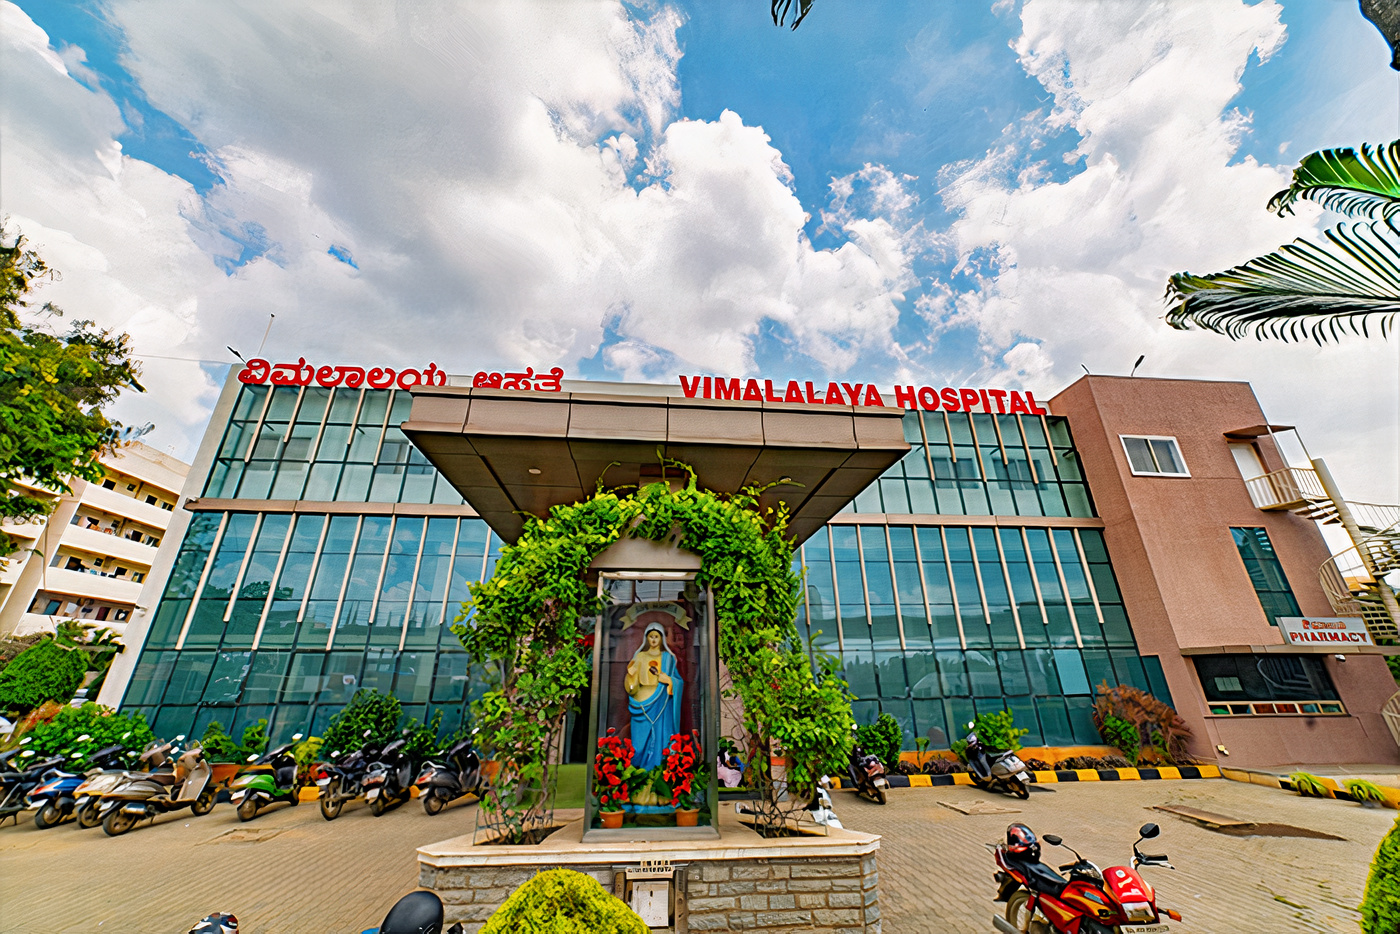 Vimalalya Hospital